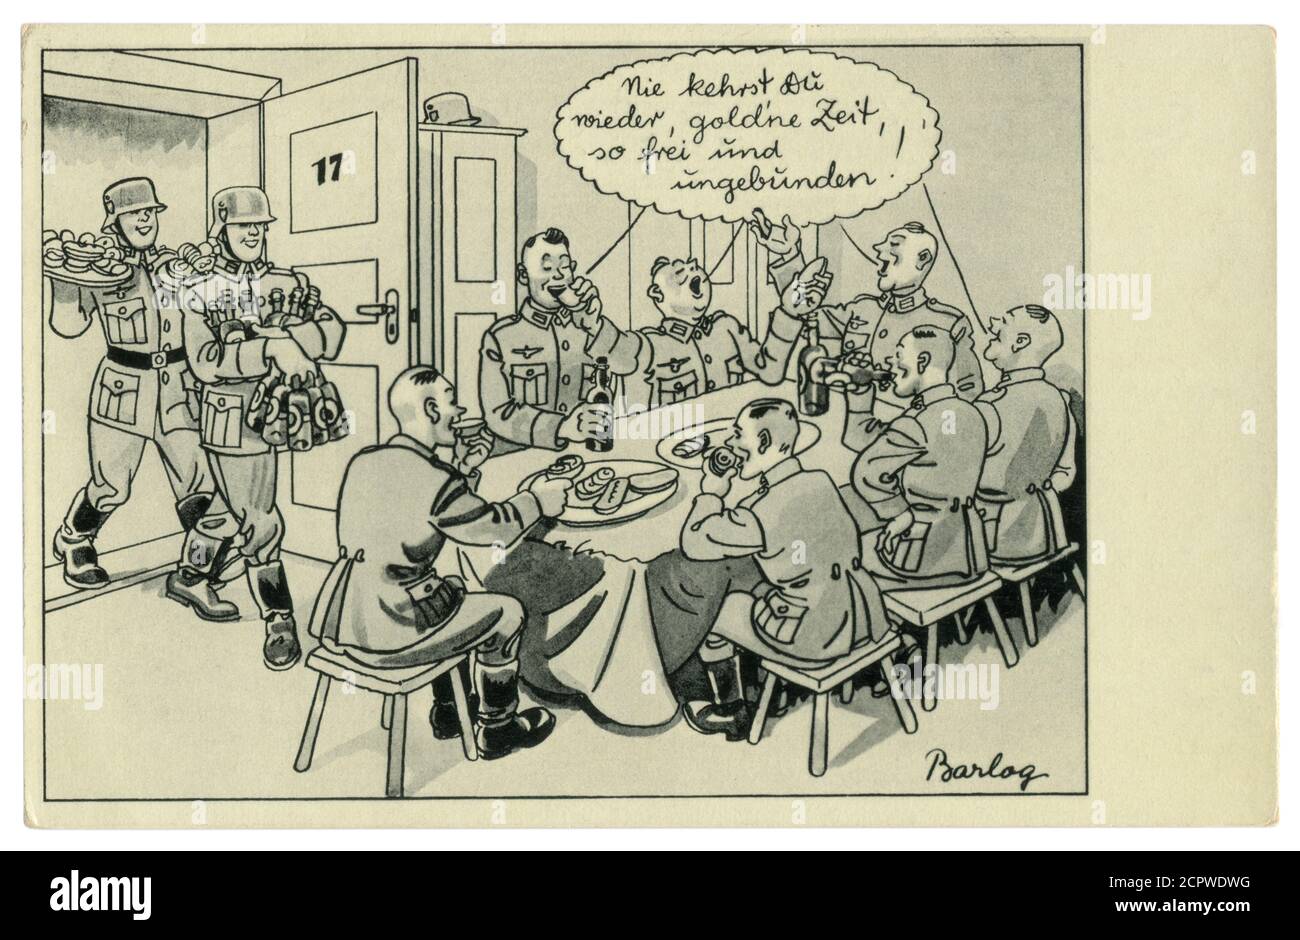 Cartolina storica tedesca: Festa nella caserma. I soldati trasportano birra e spuntini. Festeggia al tavolo, serie satirica, di Barlog, Germania, 1939 Foto Stock